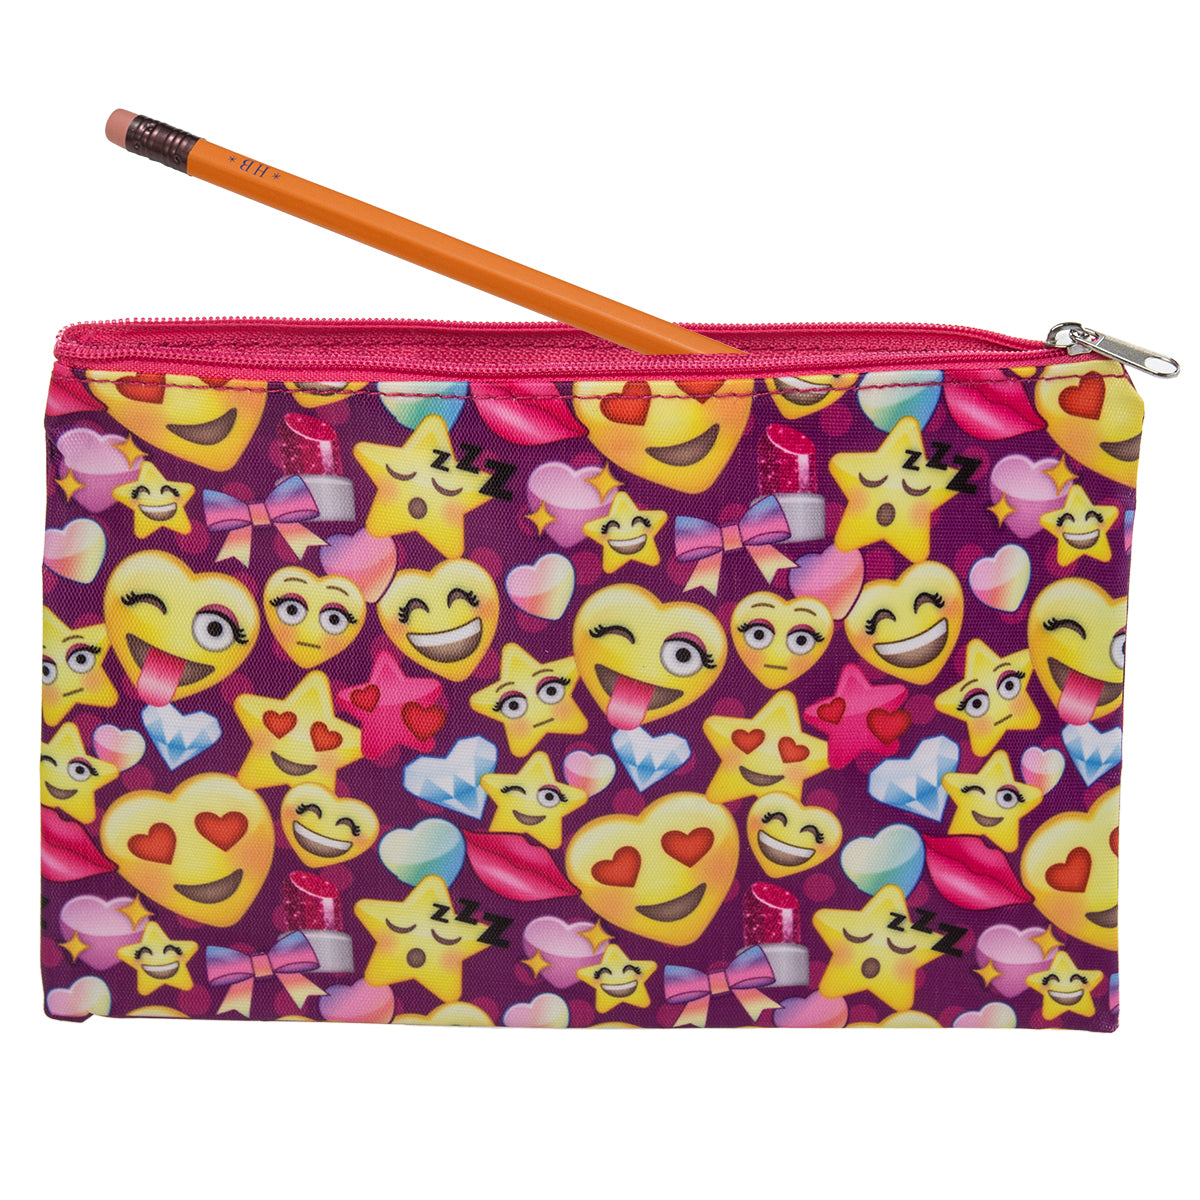 Emoji Zipper Clutch – Fun Kids Purse Or School Supplies Case